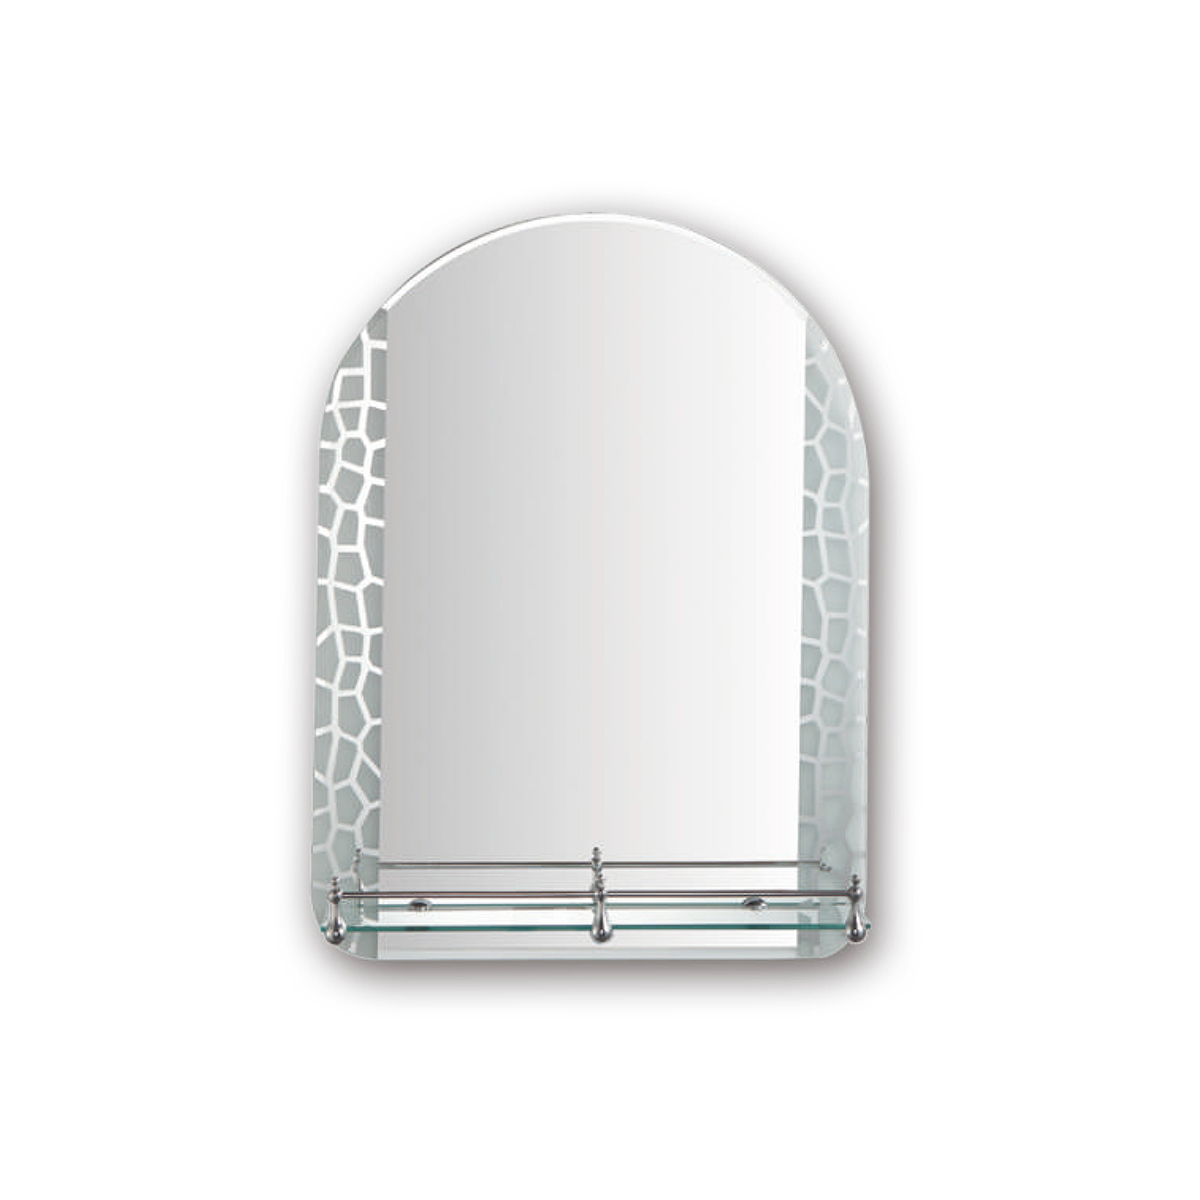 Зеркало фигурное Frap F694, с полкой, 60 x 45 см зеркало круглое frap f655 с полками d 60 см